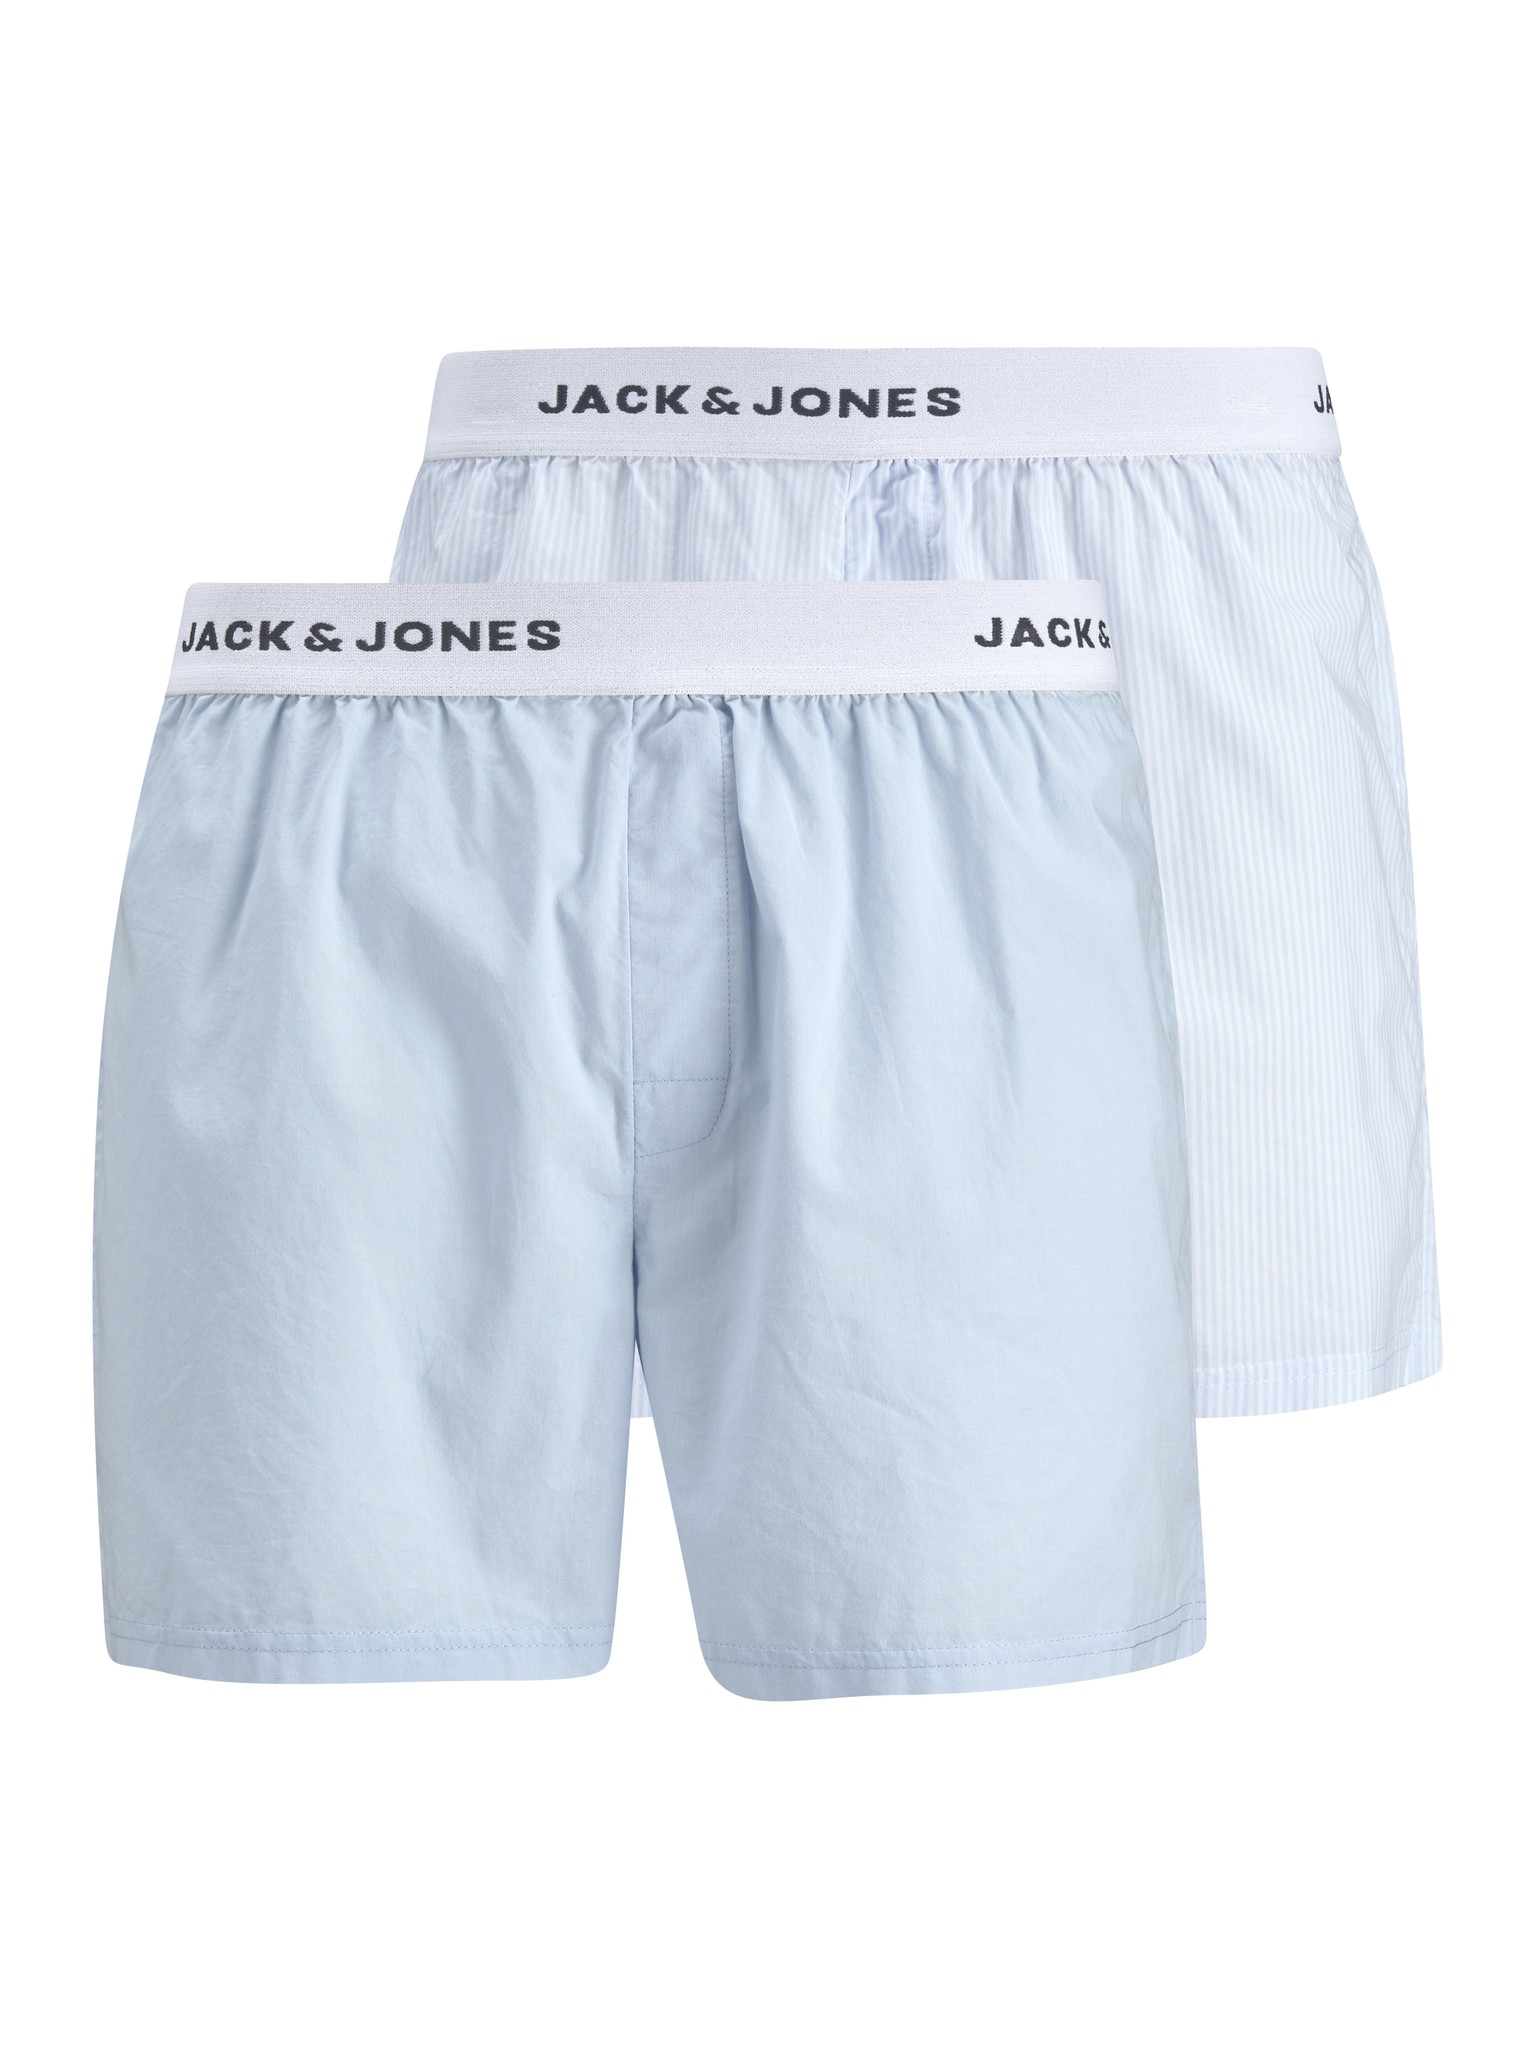 Jack & Jones Wijde Boxershorts Heren 2-Pack Blauw Geweven Katoen - Maat  L - Losse boxershort heren